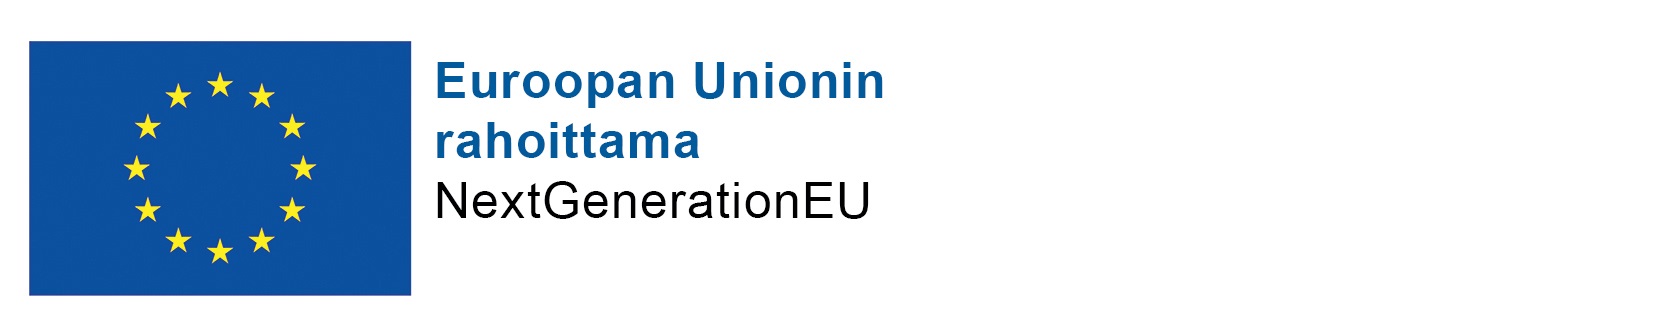 Euroopan Unionin rahoittama, NextGeneration EU:n logo